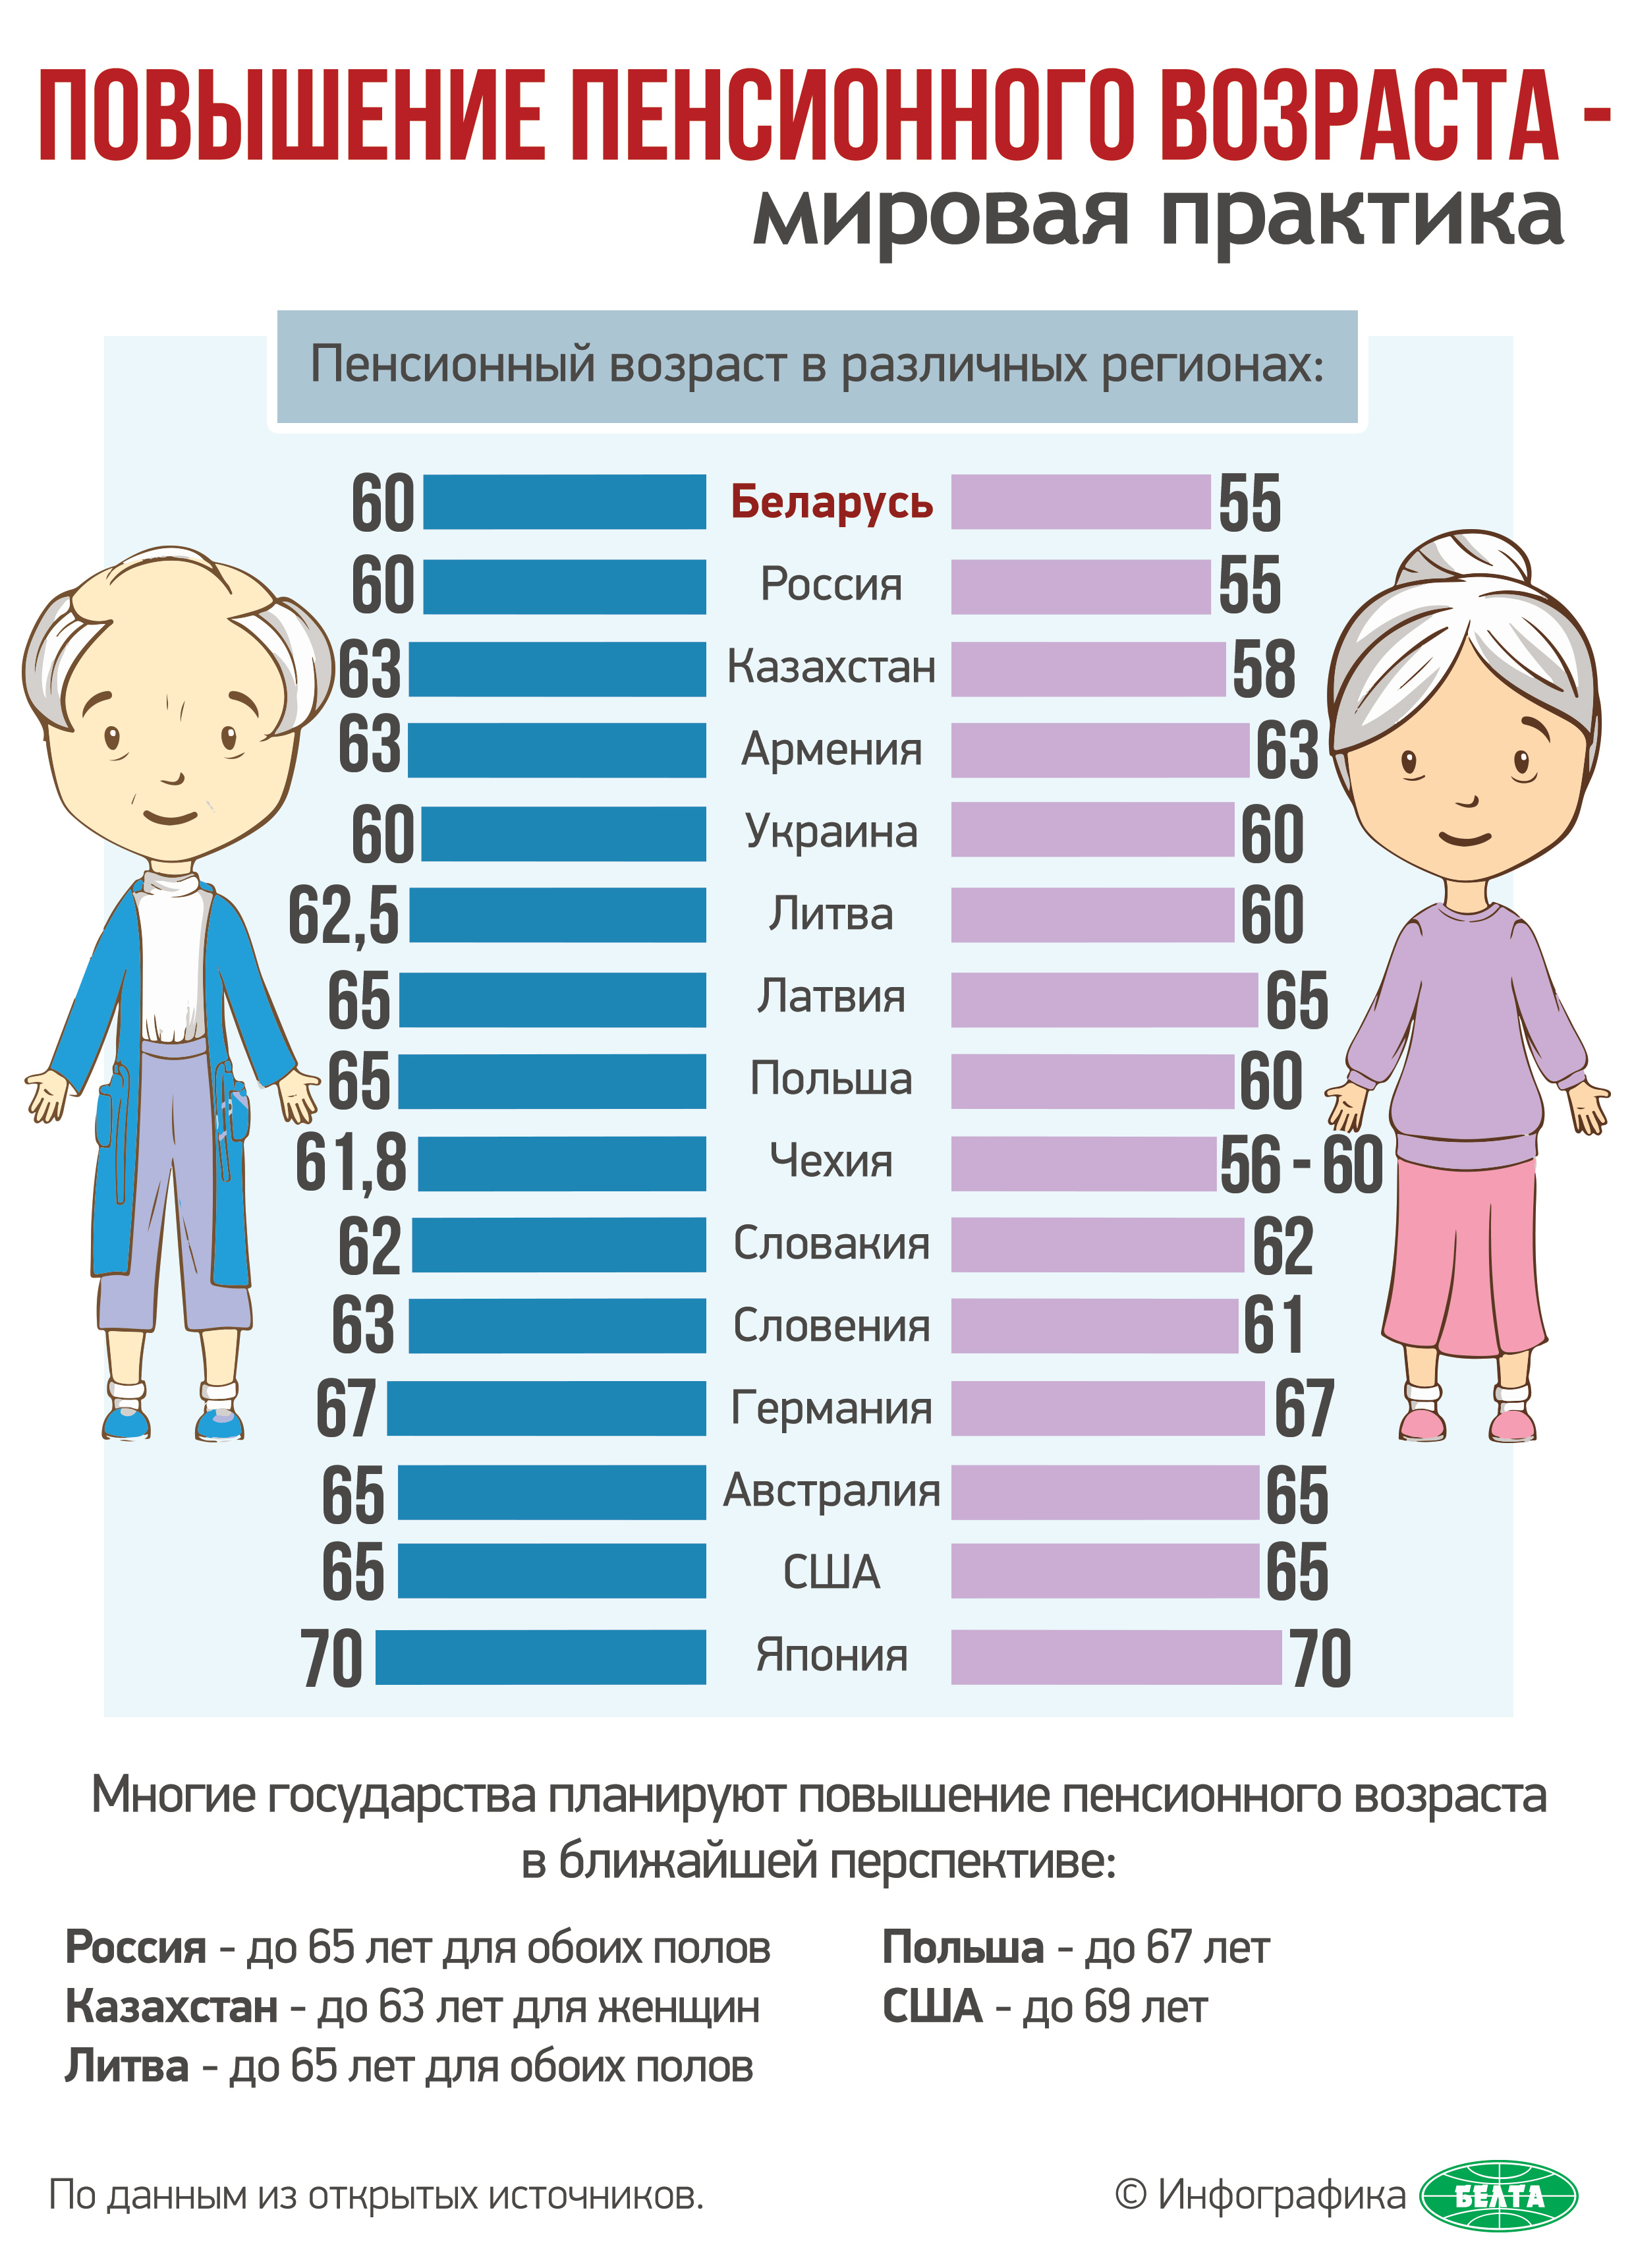 Выход пенсионера на пенсию. Возраст пенсионного возраста в России. Повышение пенсионноговозрас. Повышение пенсионного возраста. Повышение пенсионного возраста в России.